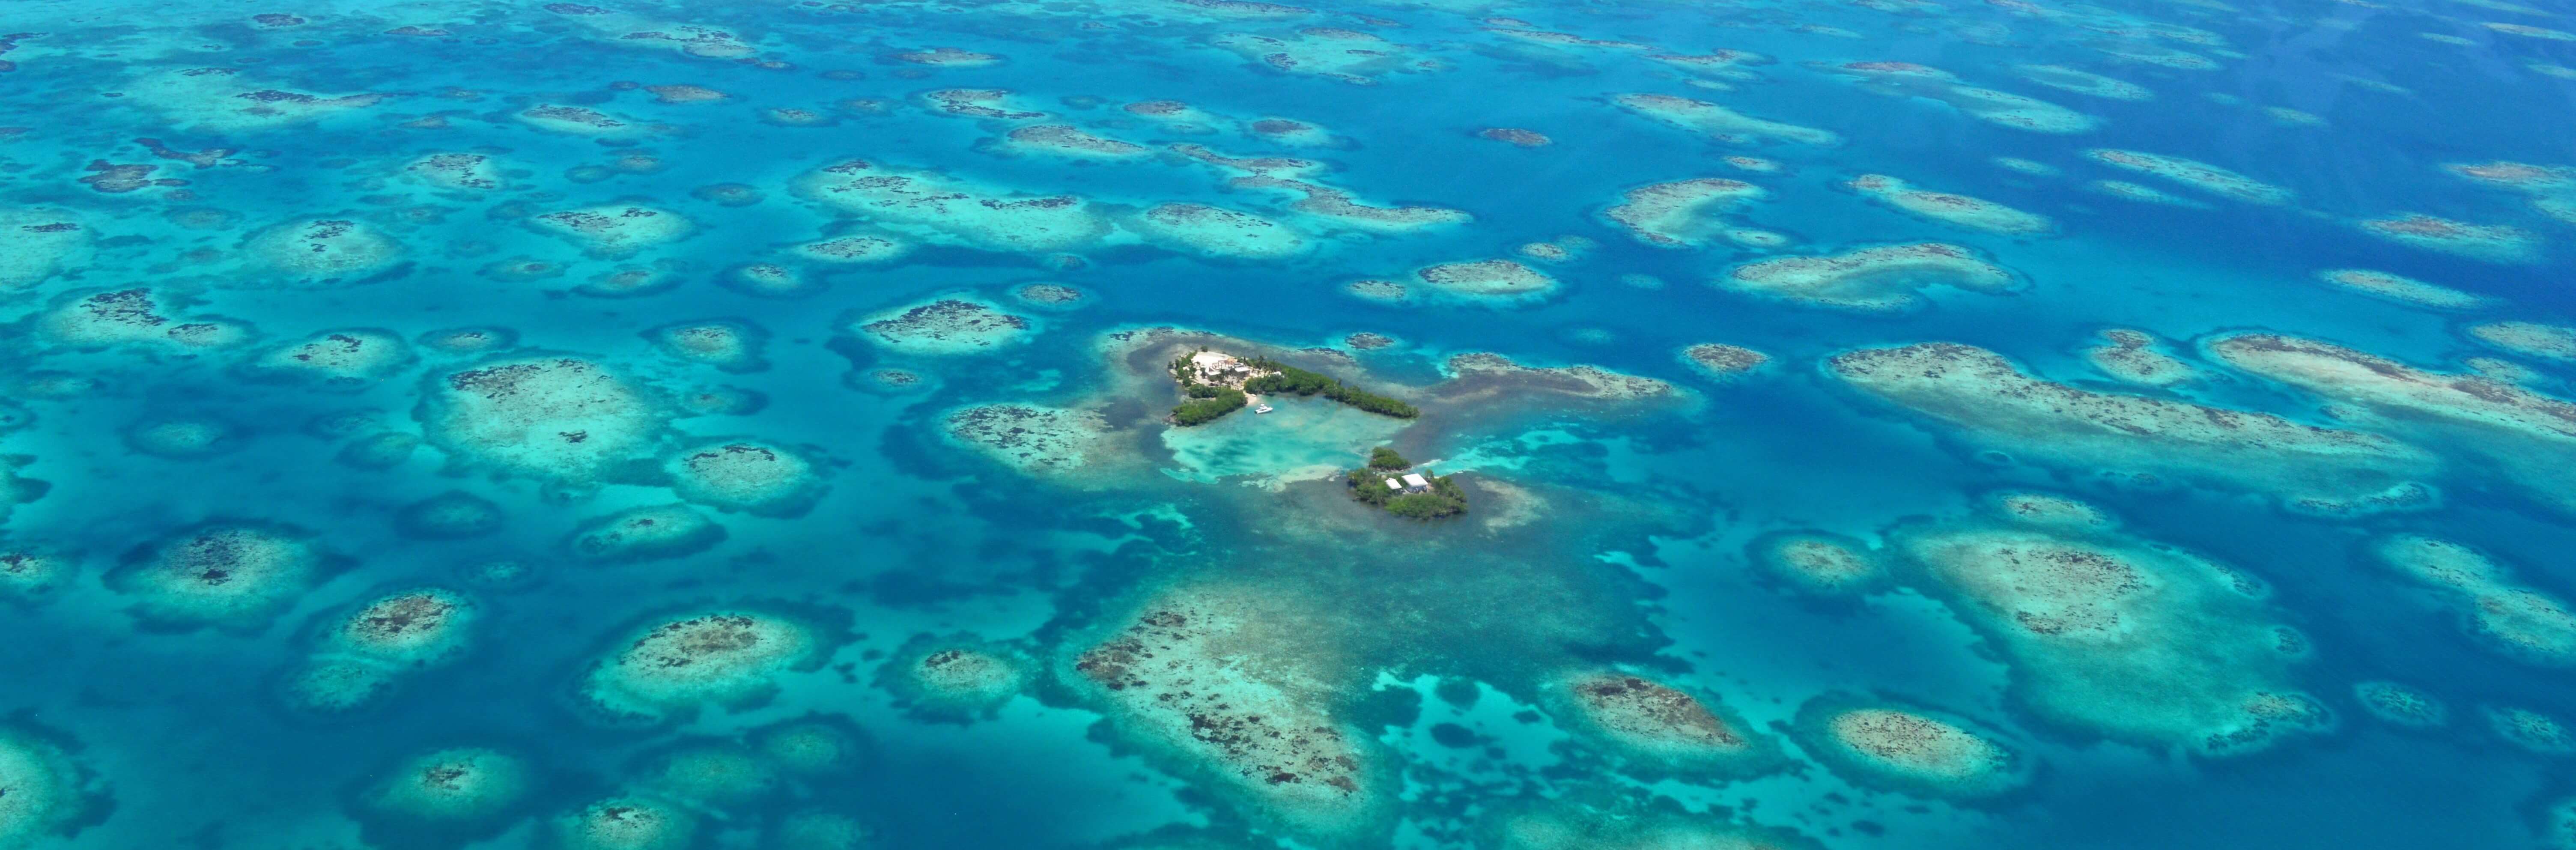 Belize Barrier Reef Reserve|バリアリーフ保護区